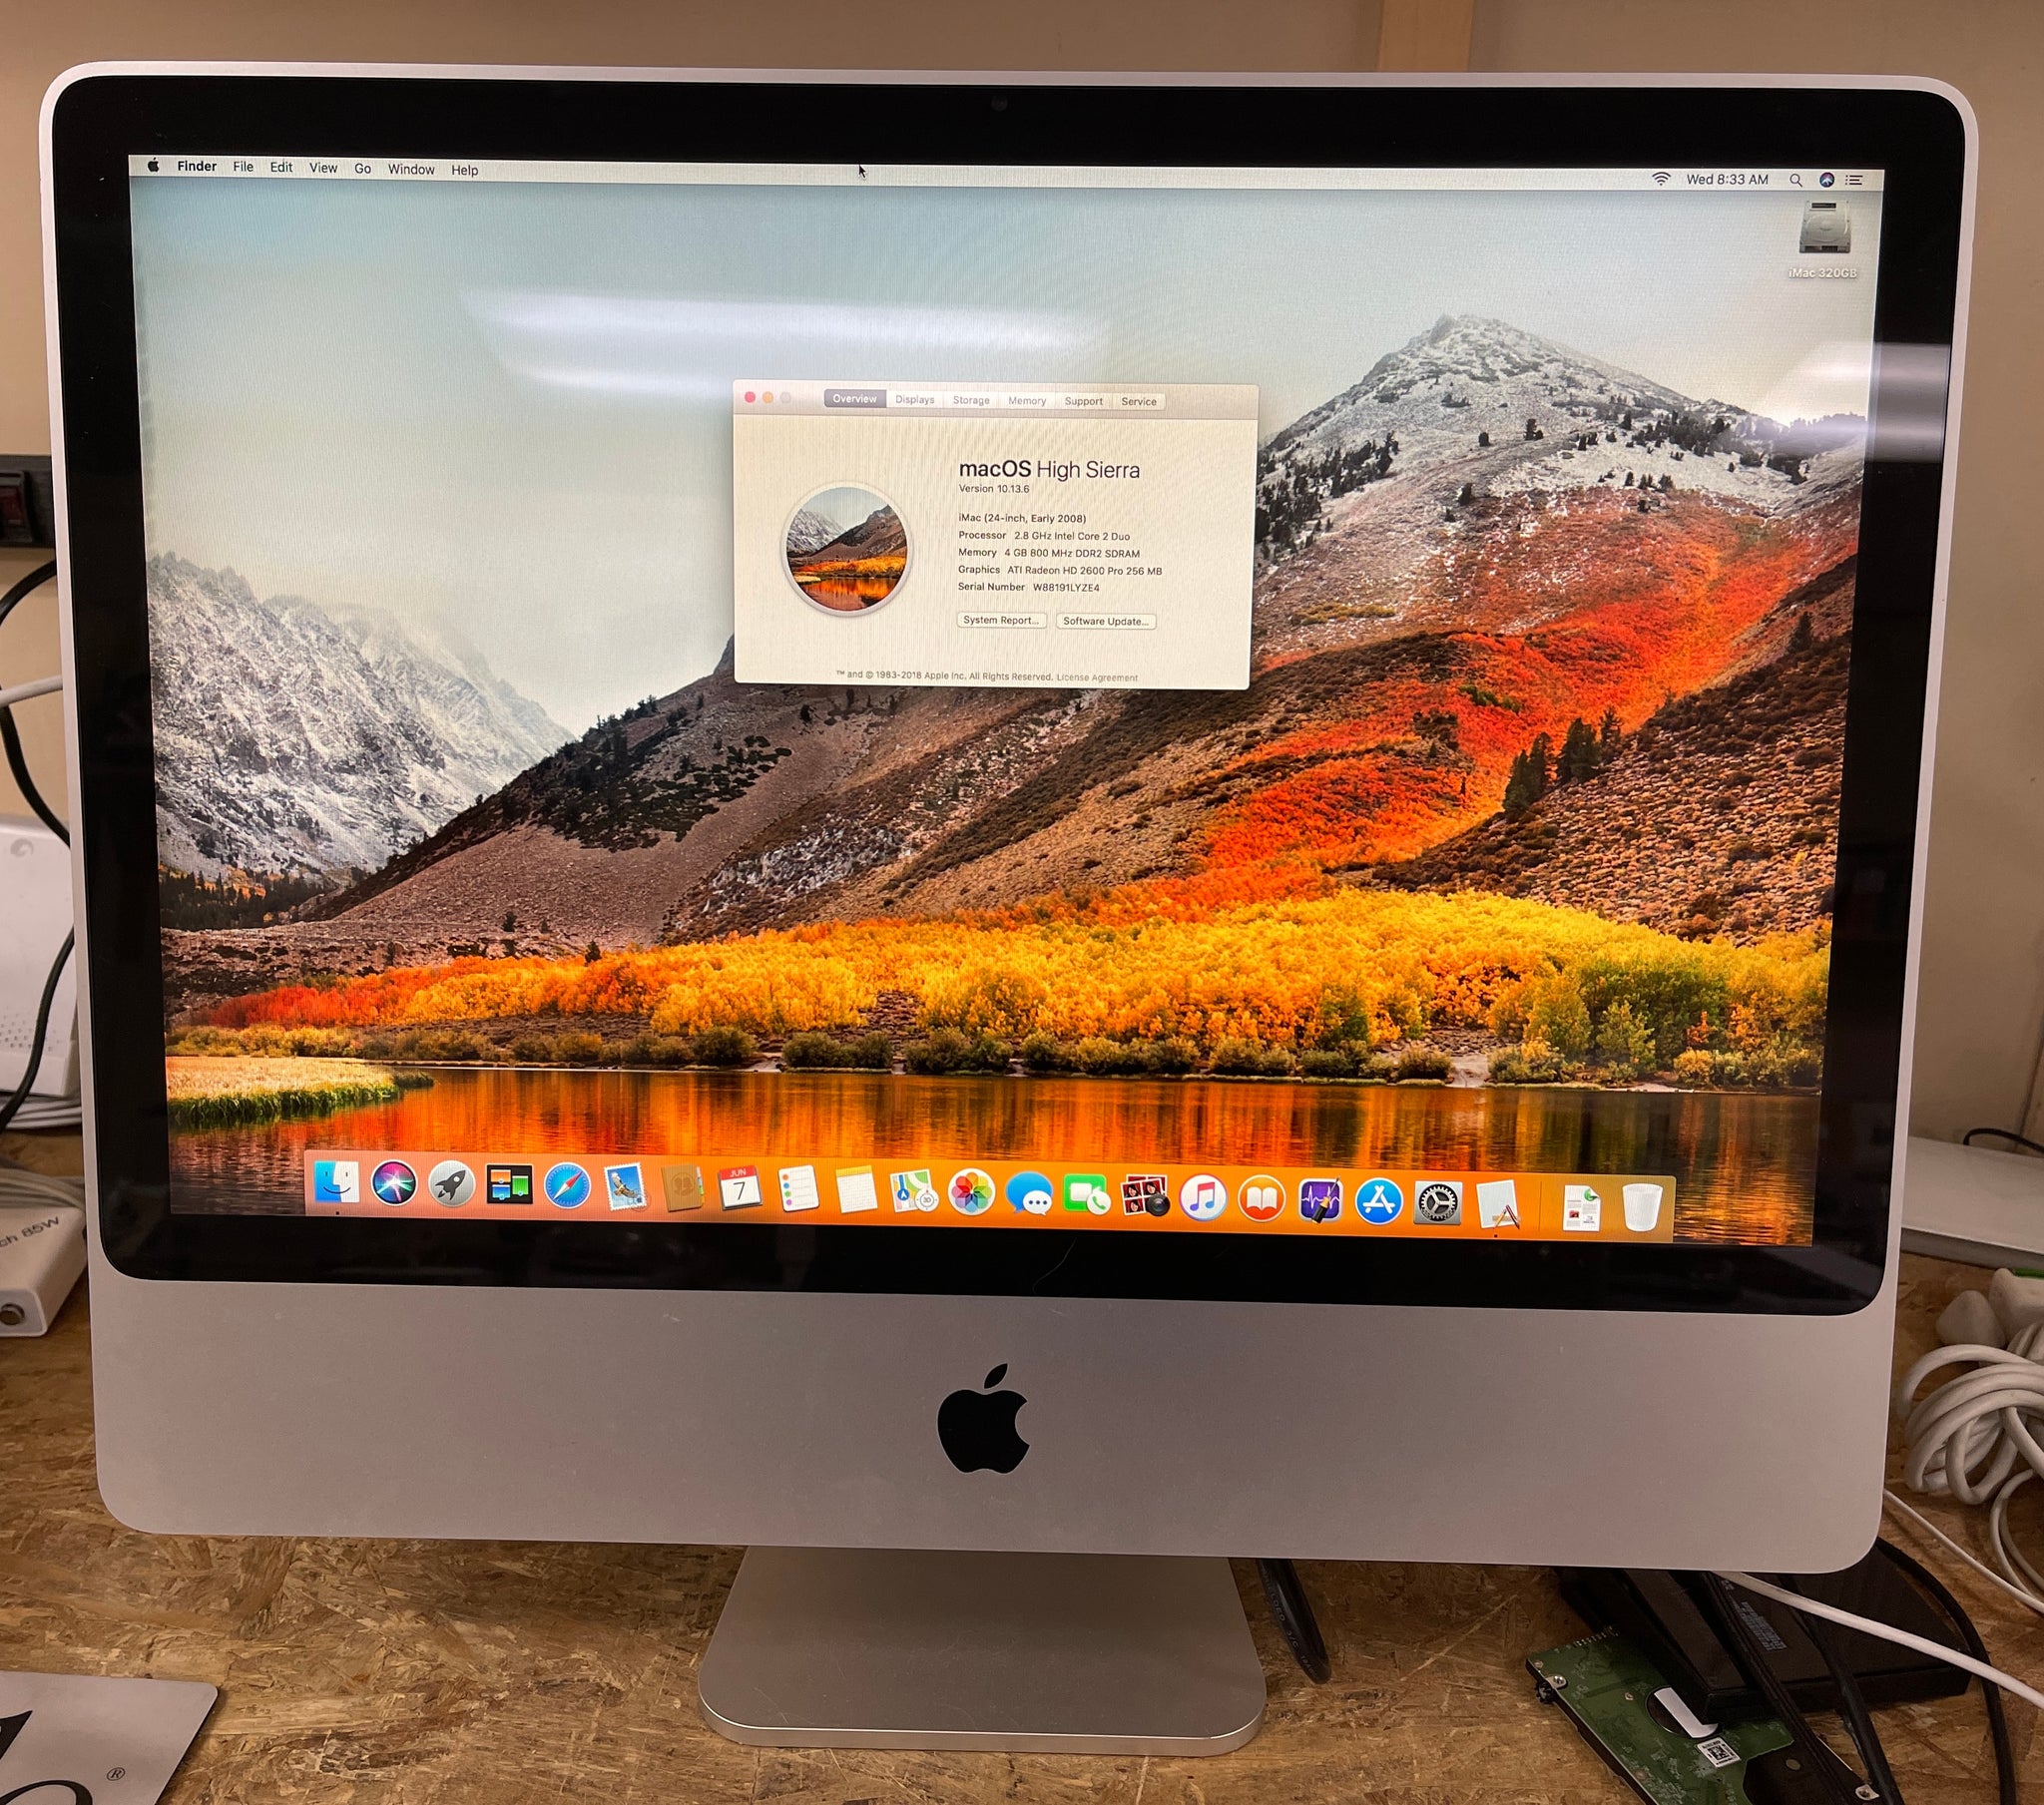 iMac 2008 24インチ - デスクトップ型PC